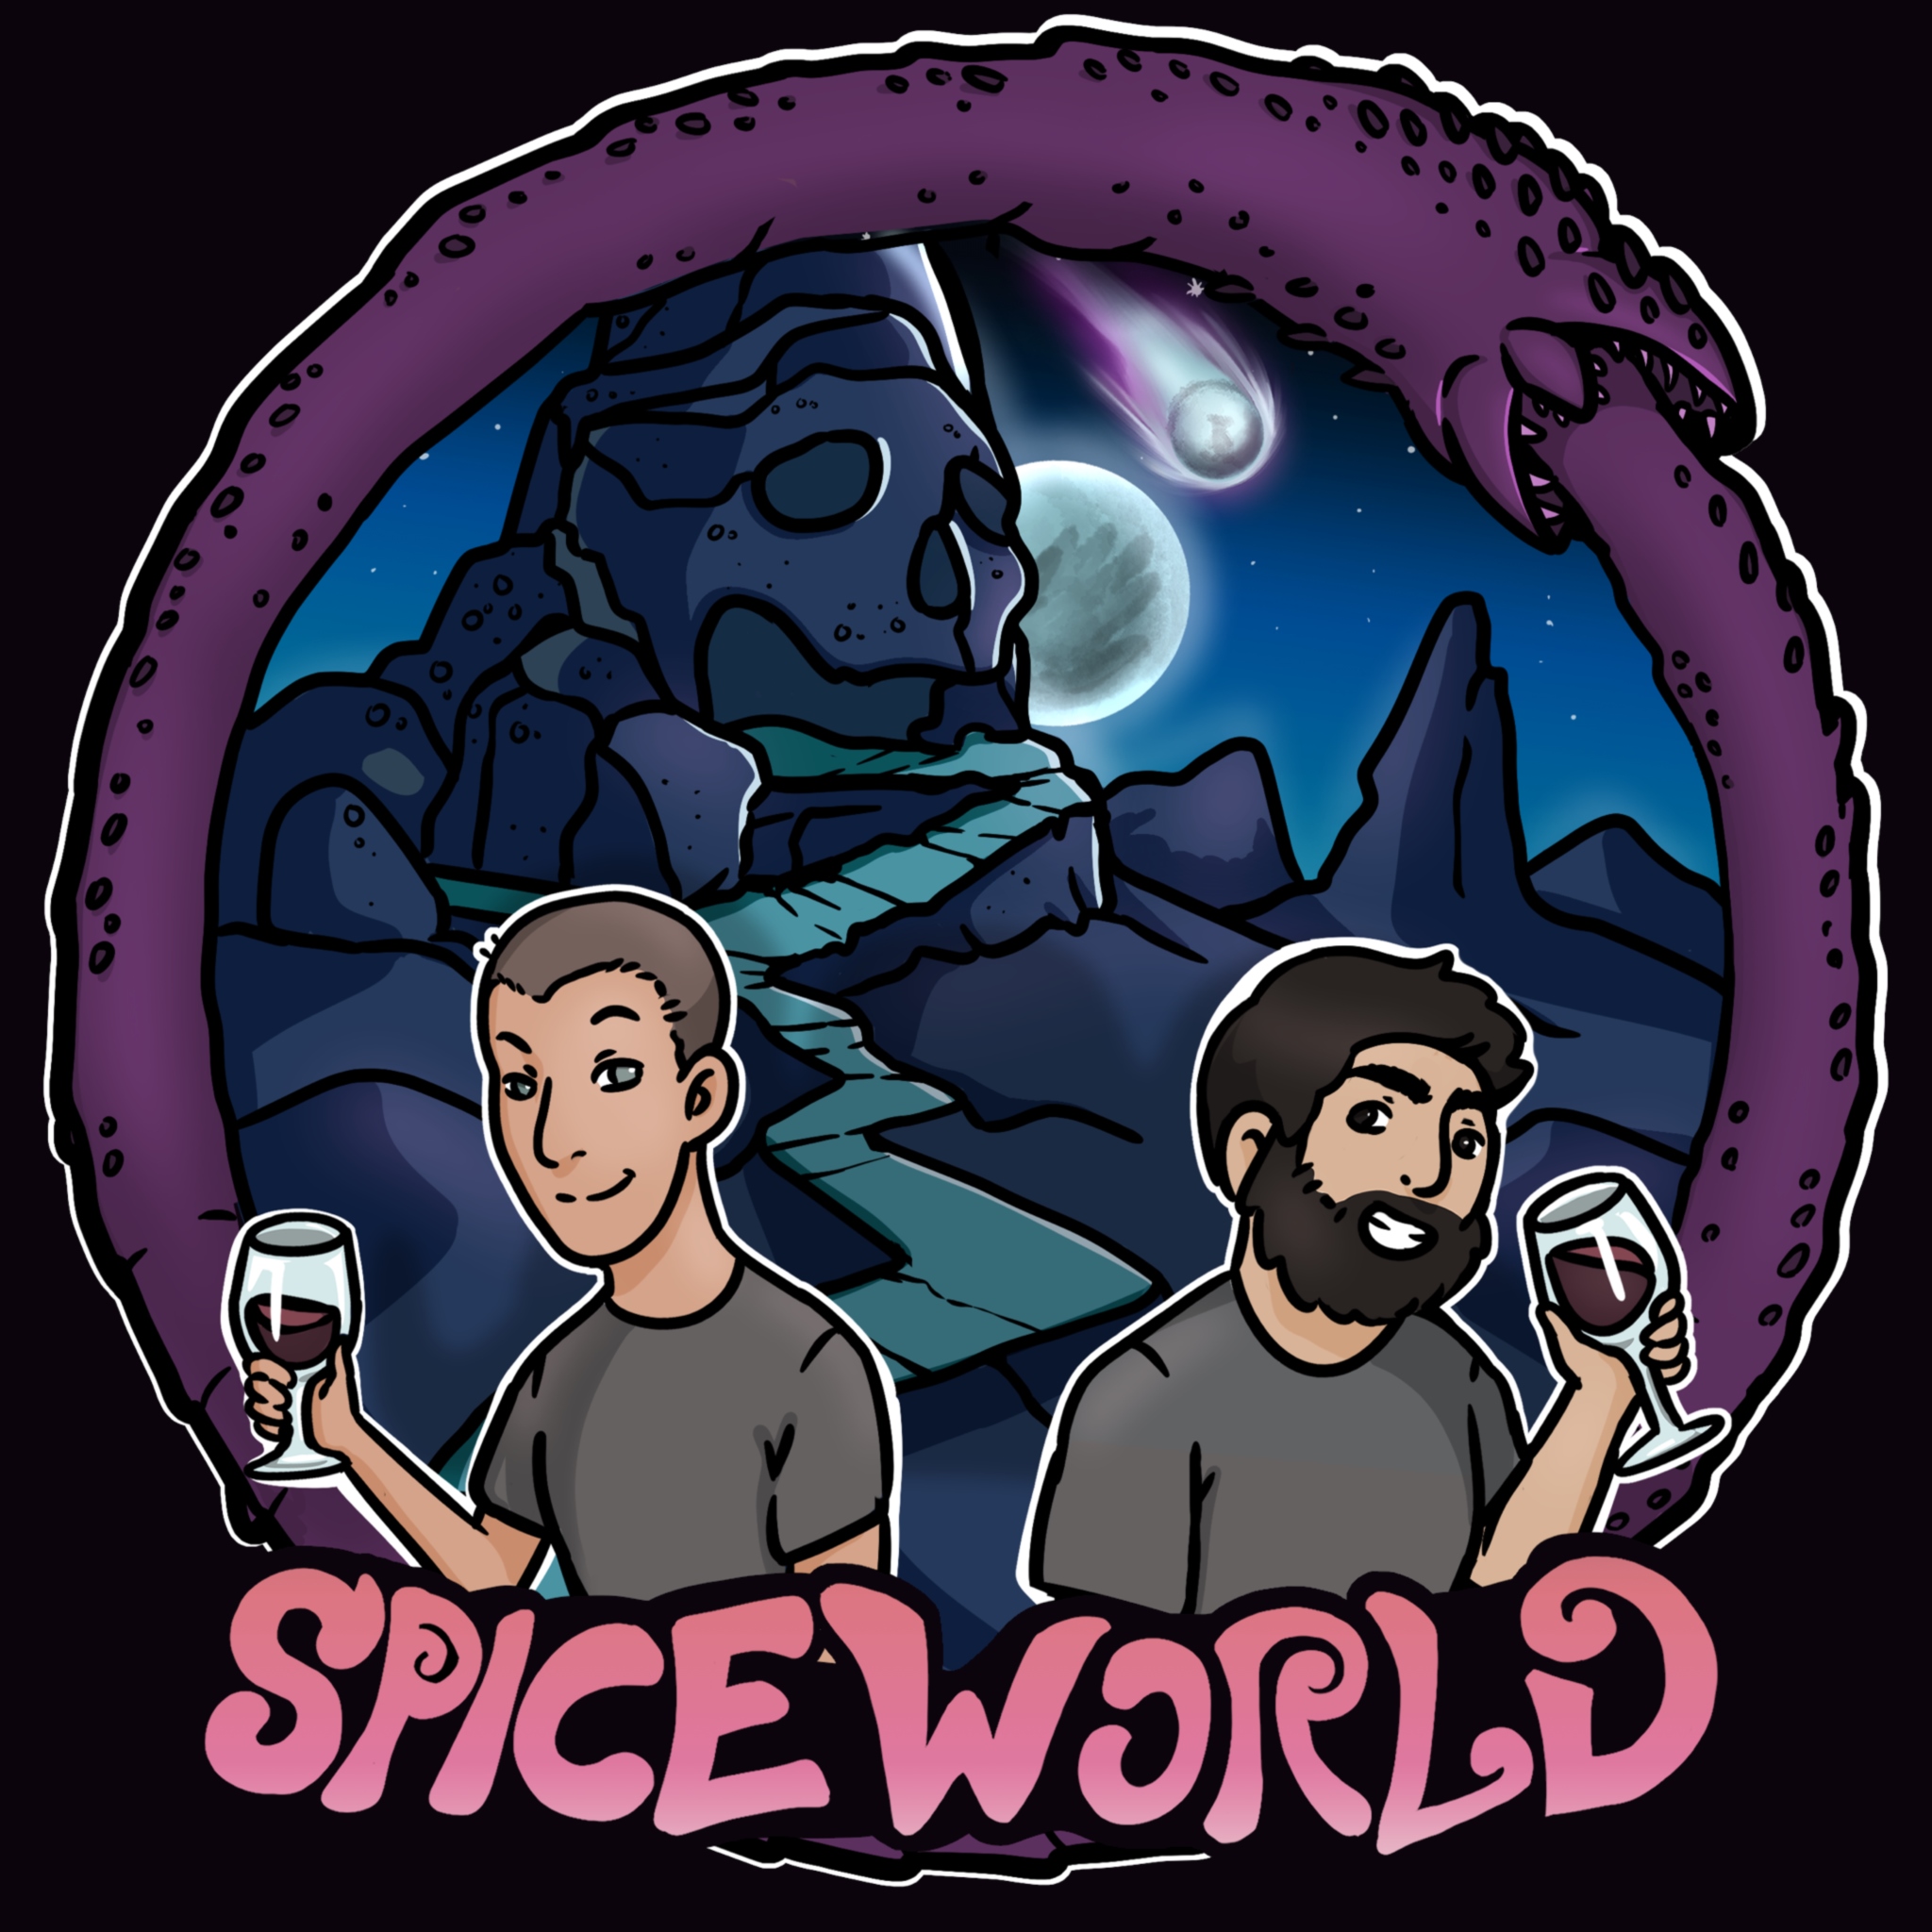 Artwork for podcast Spice World